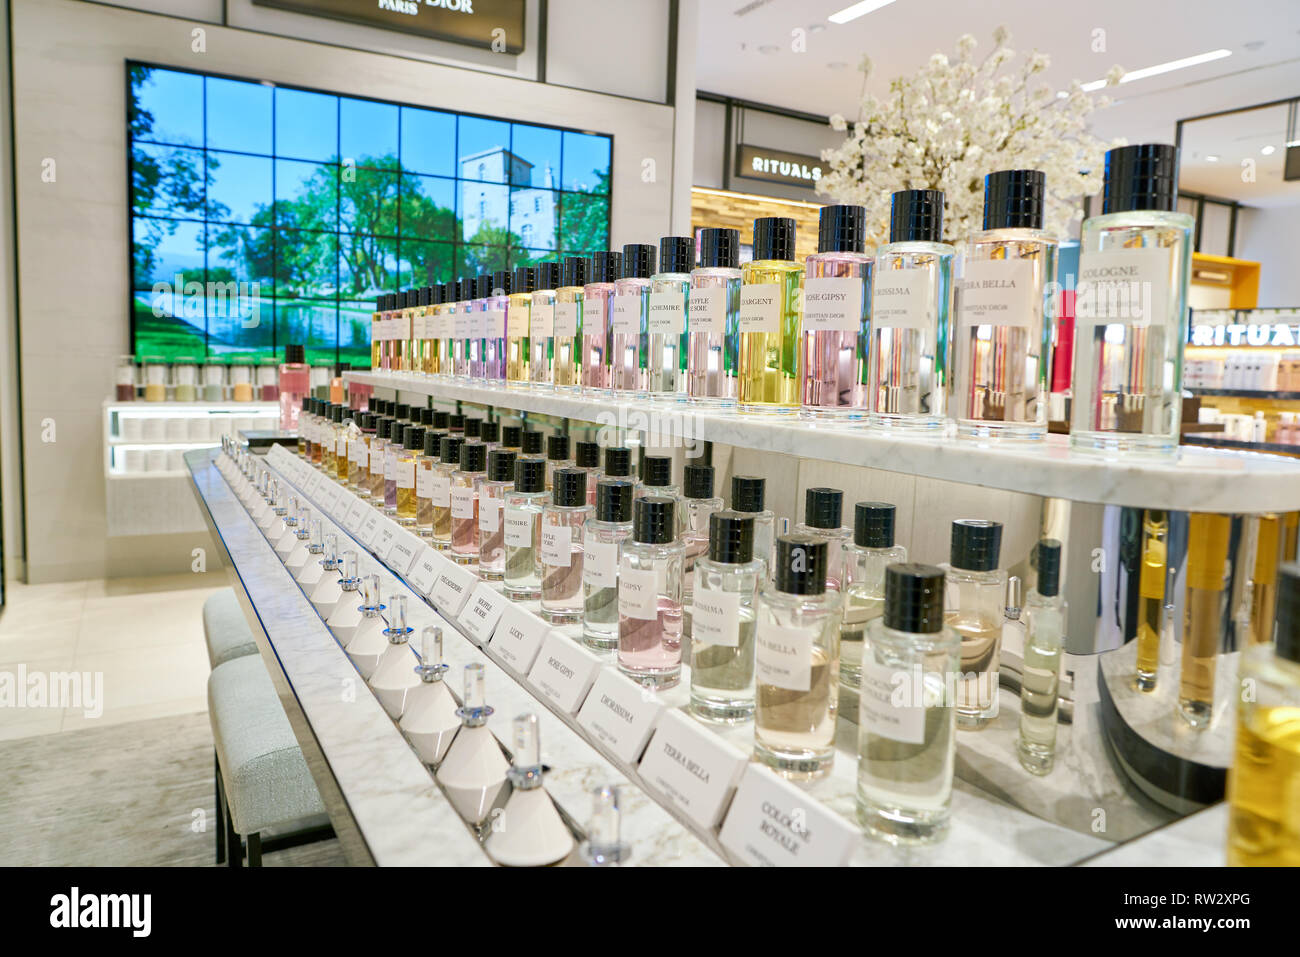 Düsseldorf, Deutschland - ca. September 2018: Christian Dior parfum  Flaschen auf dem Display bei Galeria Kaufhof in Düsseldorf Stockfotografie  - Alamy